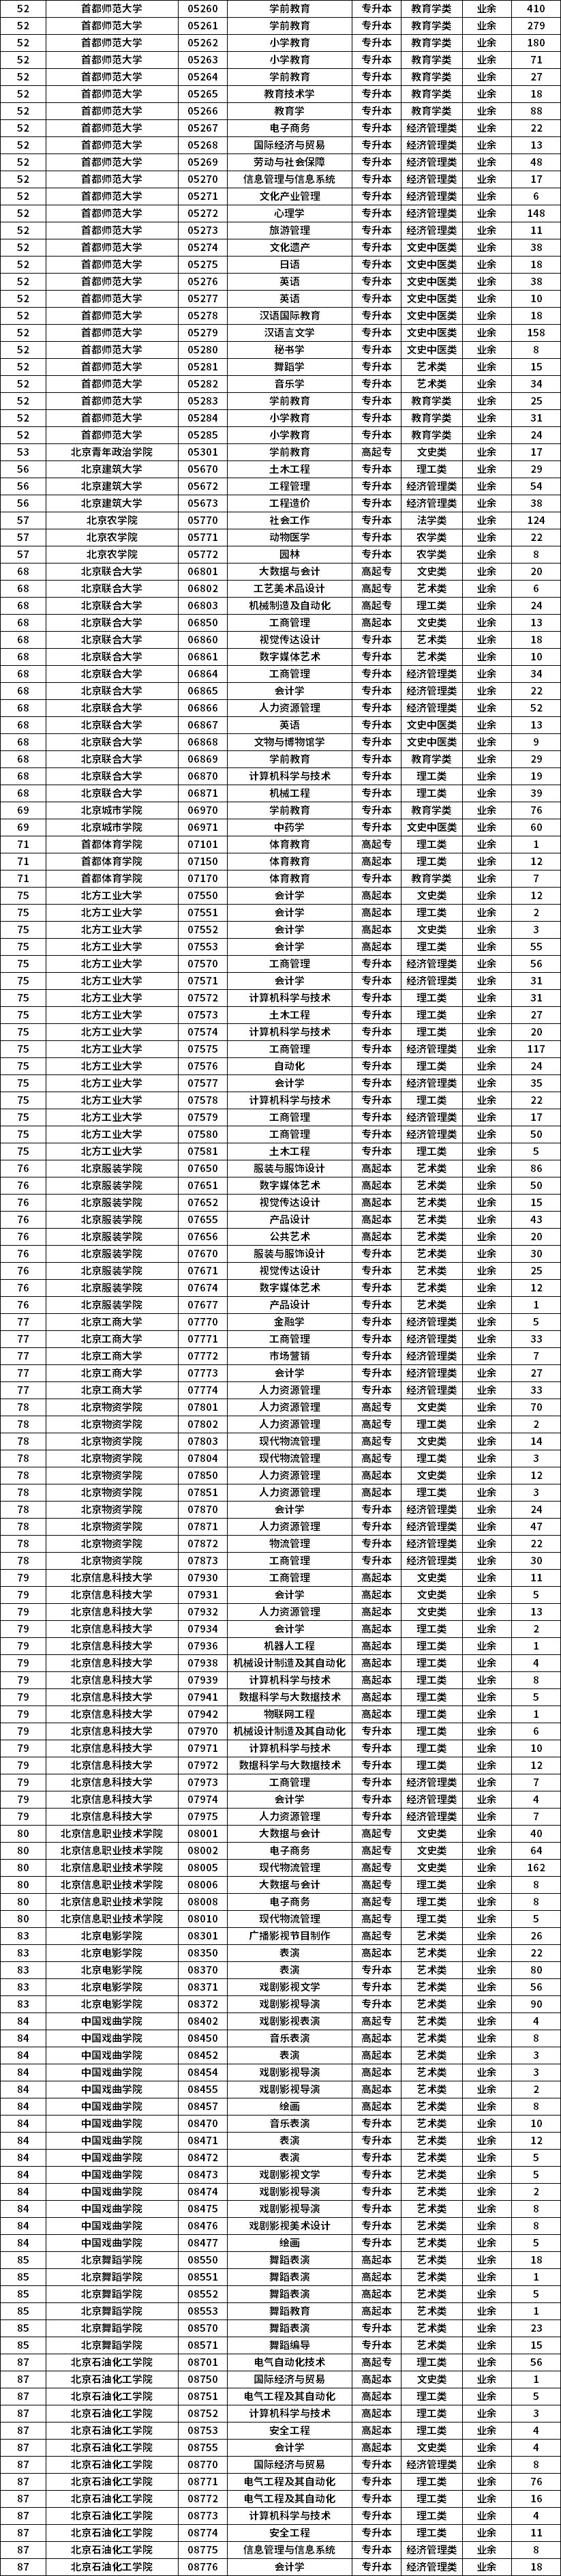 2021年北京市成人高考专业计划数统计表2.png